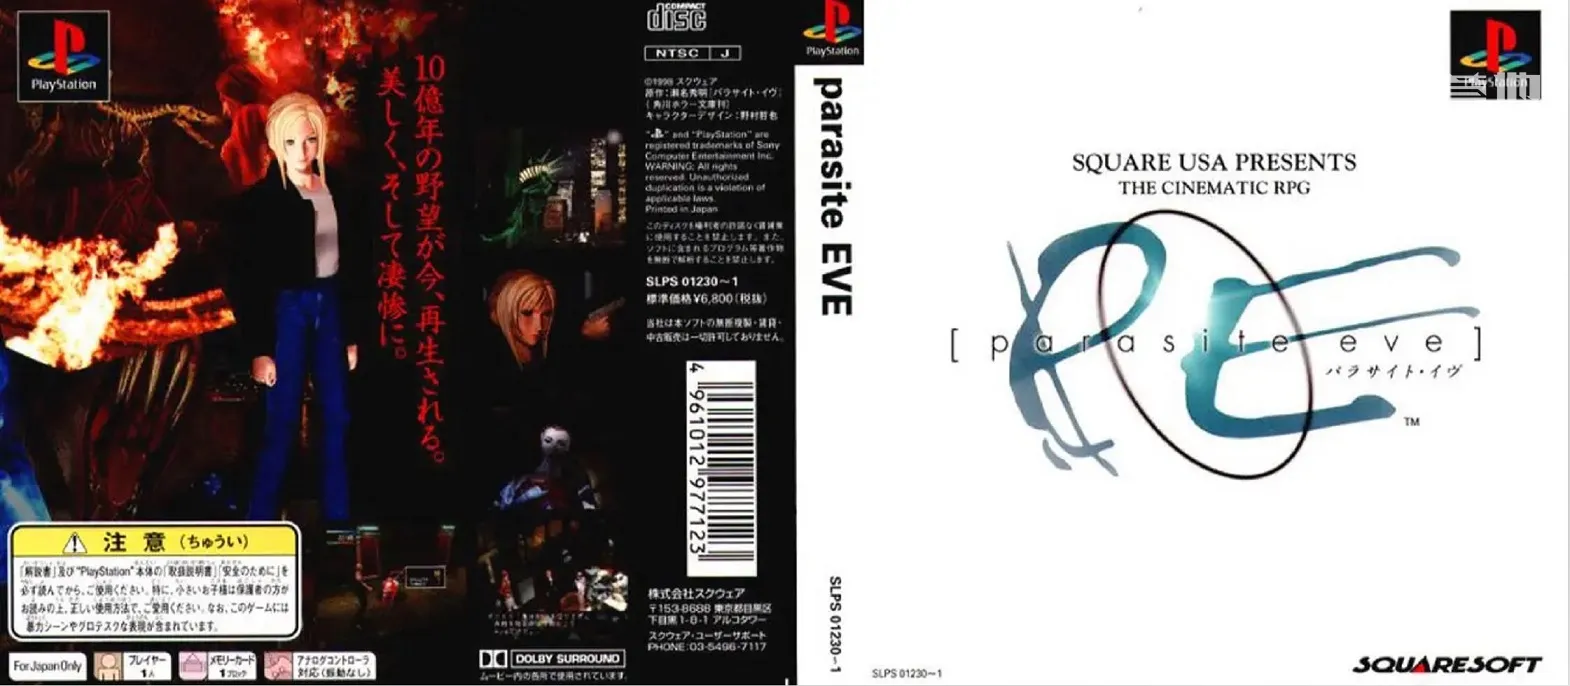 盤點 Square Enix 值得「復活」的經典遊戲